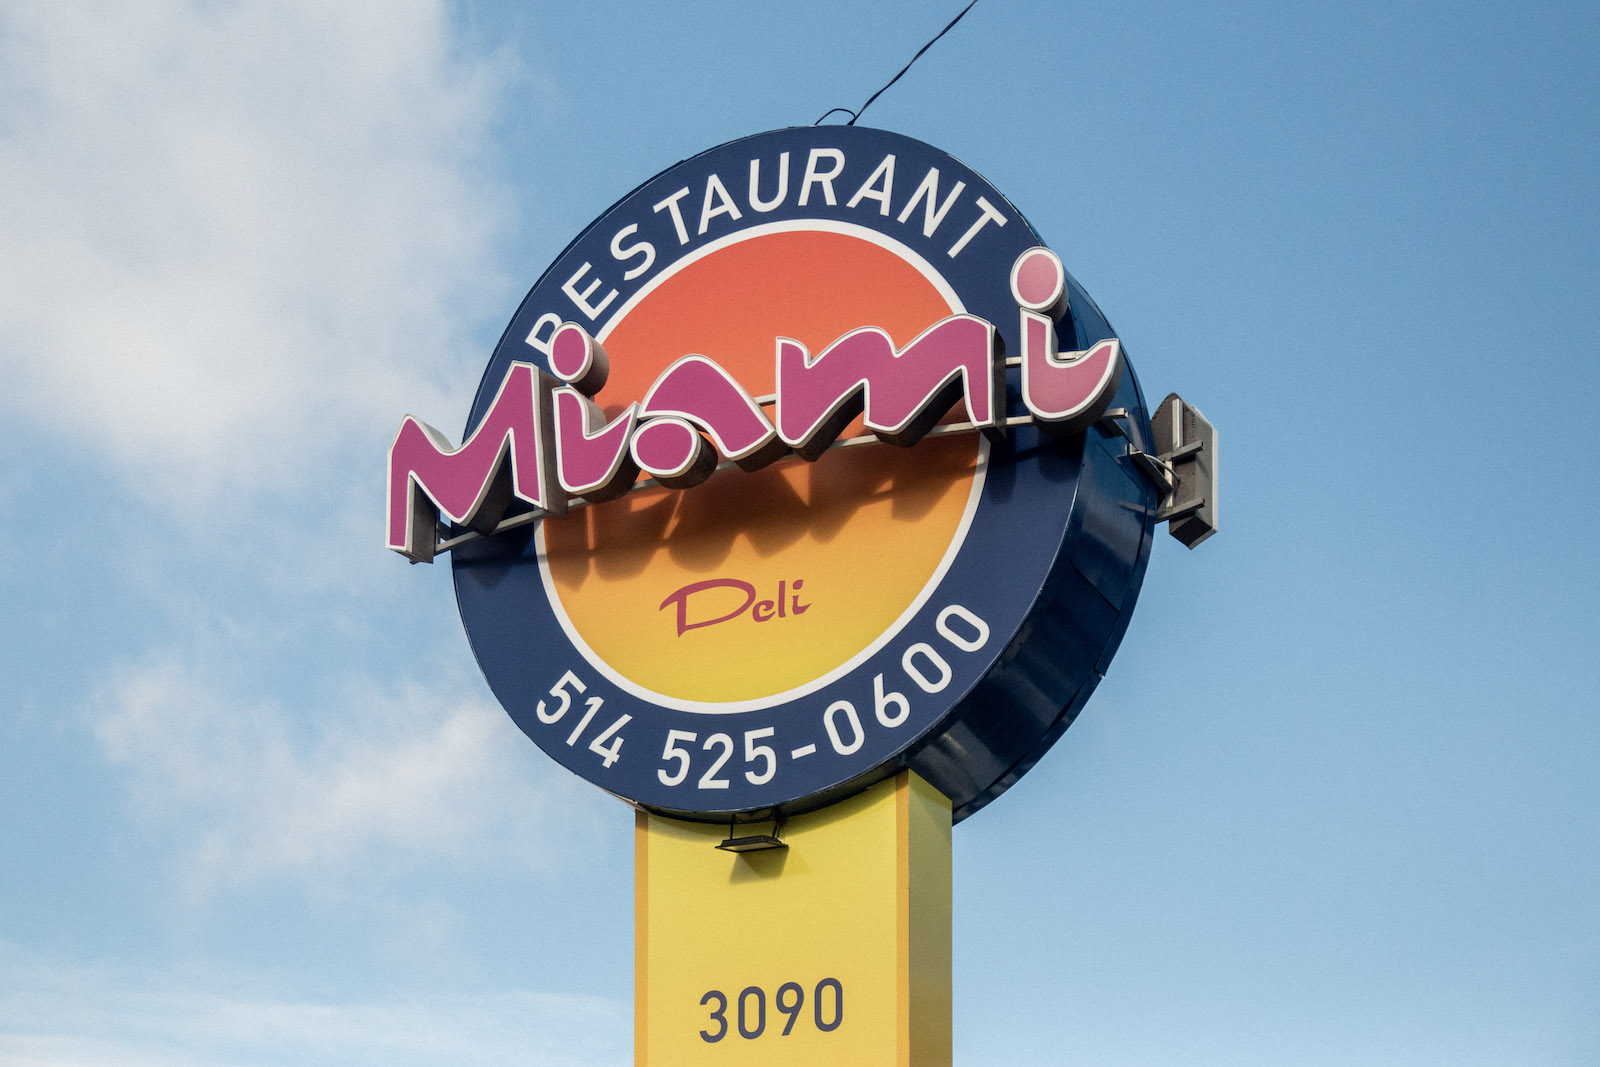 Miami Deli: Montreal's fast food temple